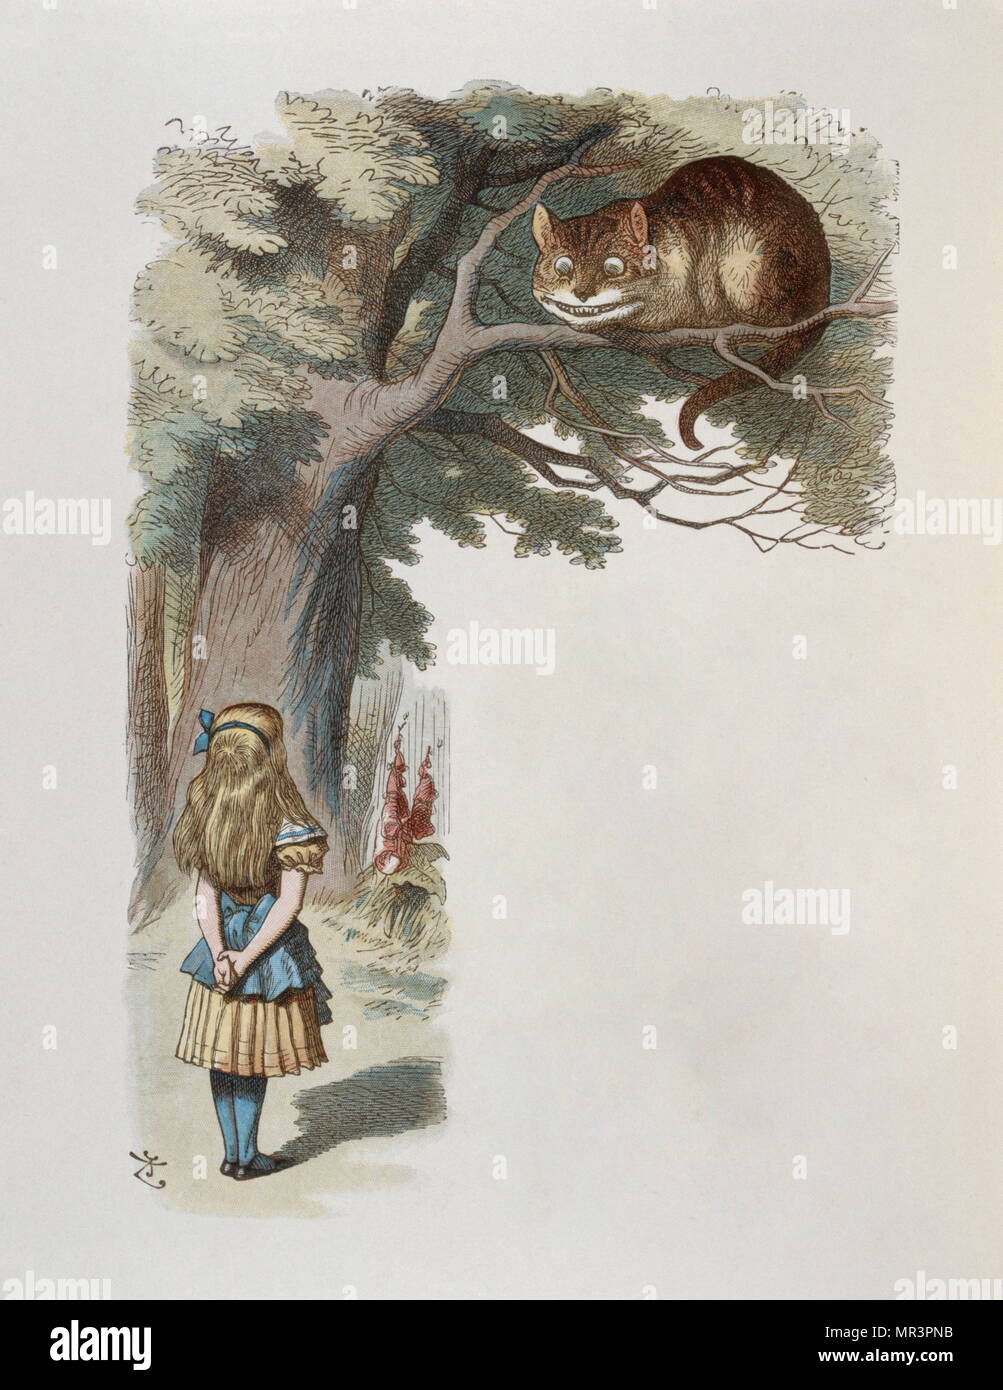 Ilustración por Tenniel, desde la edición de 1890 de "Alicia en el país de las Maravillas" de Lewis Carroll. Foto de stock